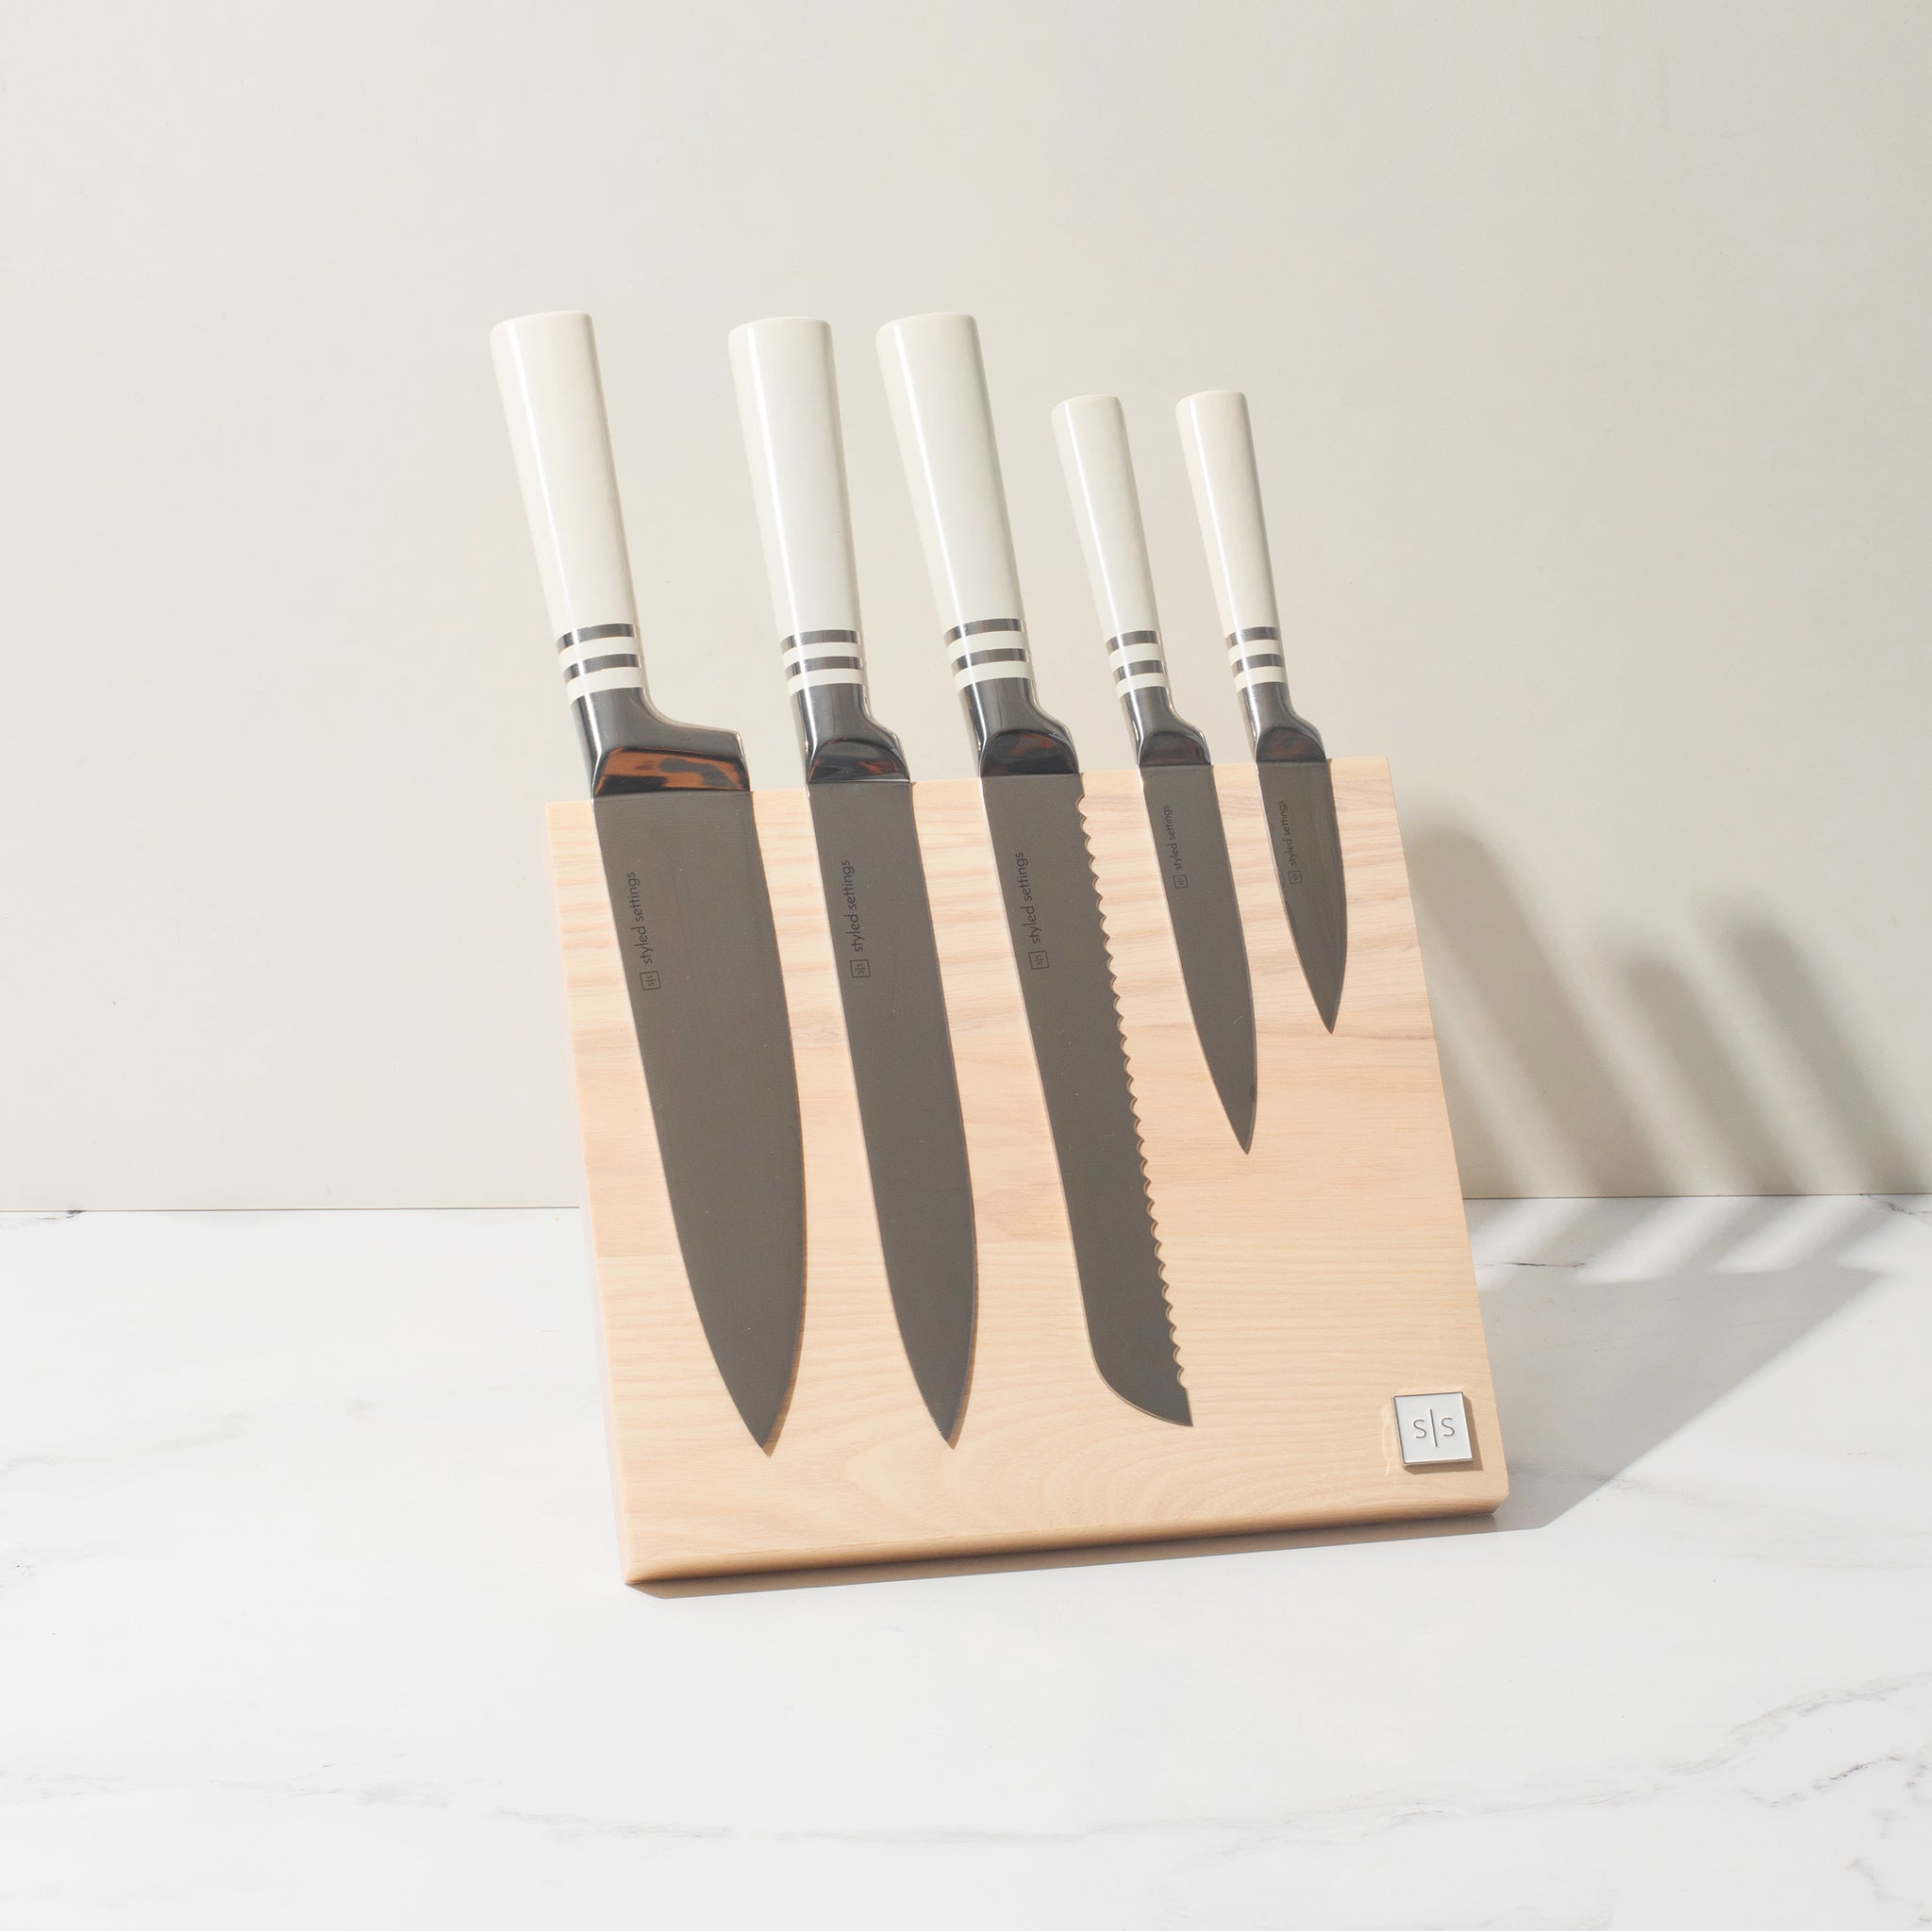 White Knife Sets  White kitchen knife set, Kitchen knives, White kitchen  knives